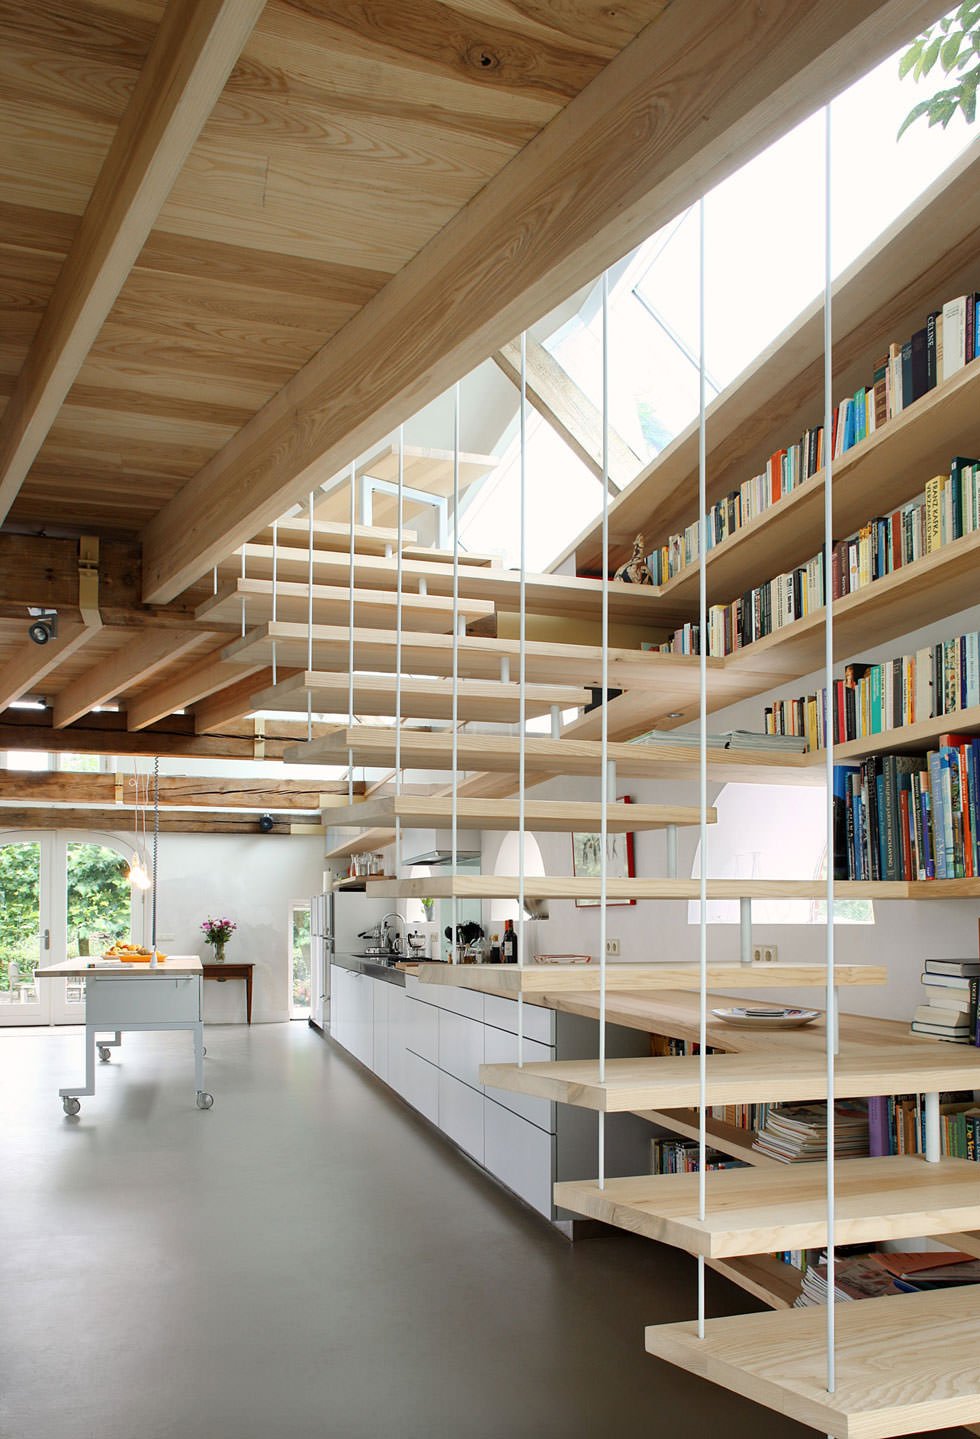 Immagine scala moderna in legno che si trasforma in un allestimento unico, diventando parte degli scaffali della libreria ma anche del top della cucina